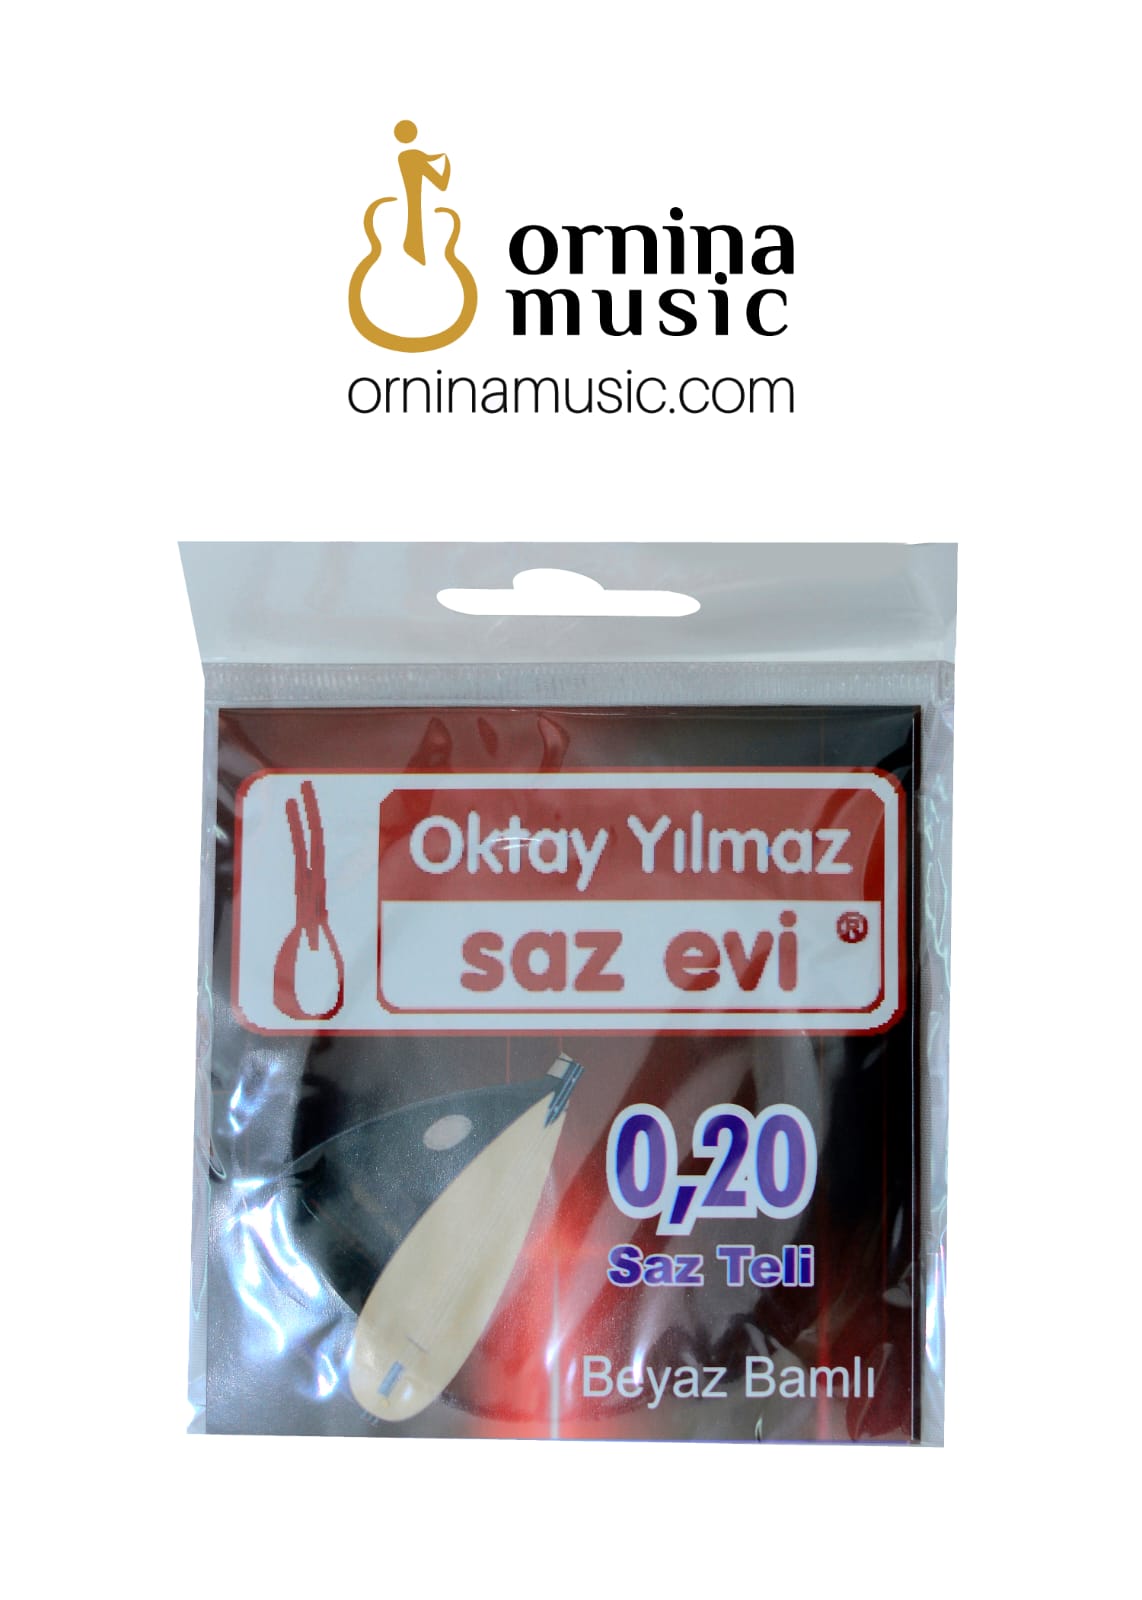 Saz strings - Musical instrument strings